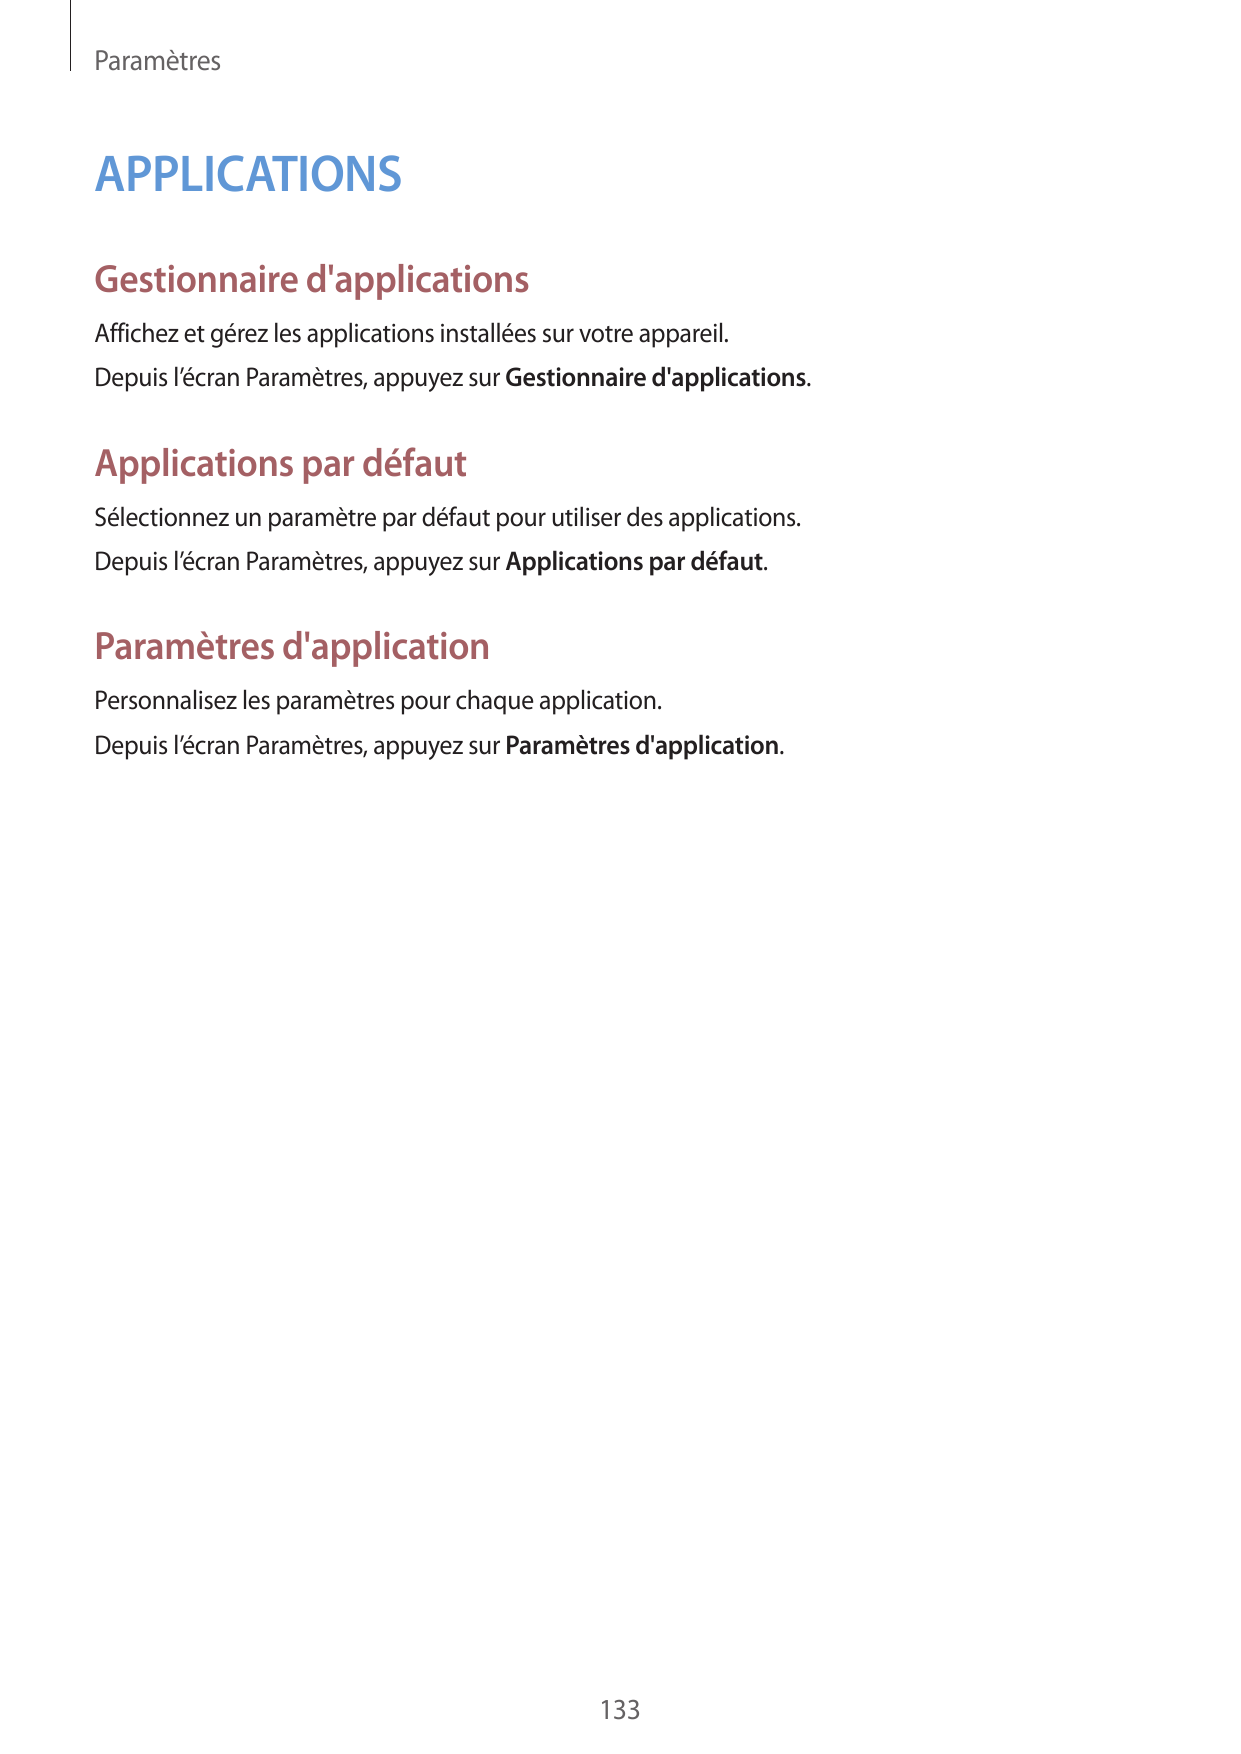 ParamètresAPPLICATIONSGestionnaire d'applicationsAffichez et gérez les applications installées sur votre appareil.Depuis l’écran